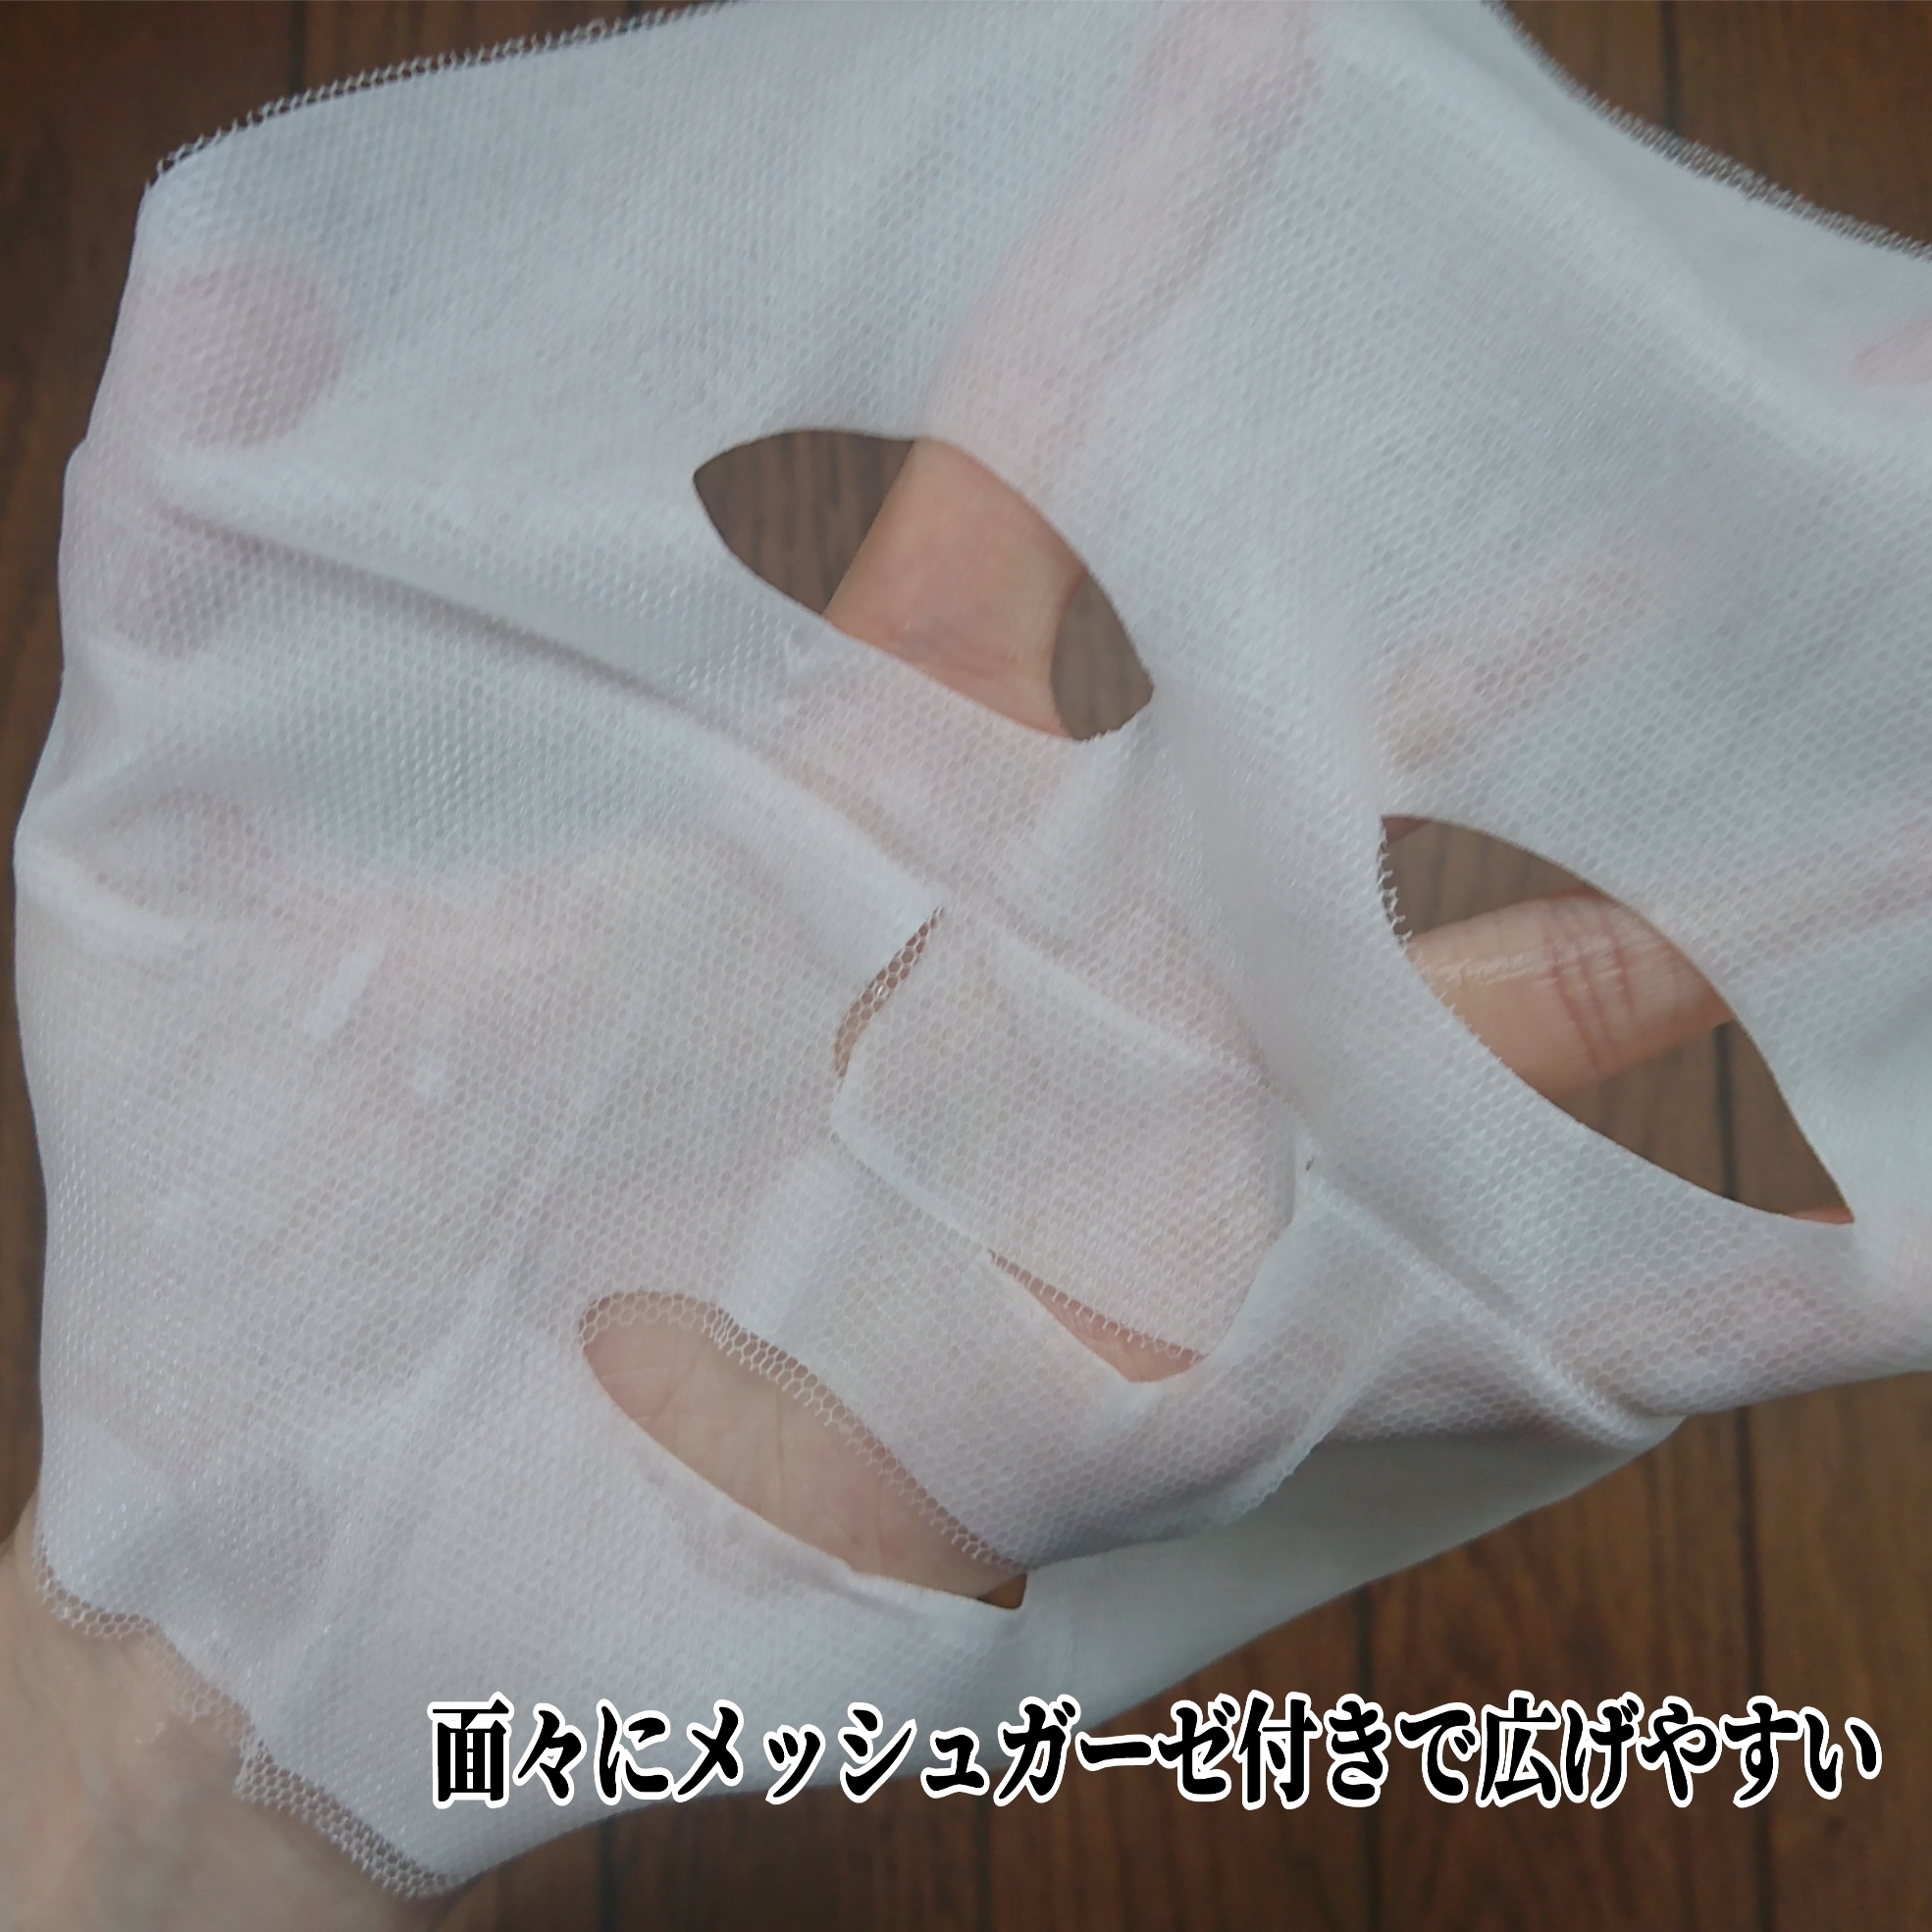 セッコク蘭エイジングケア・マスクαを使ったYuKaRi♡さんのクチコミ画像6